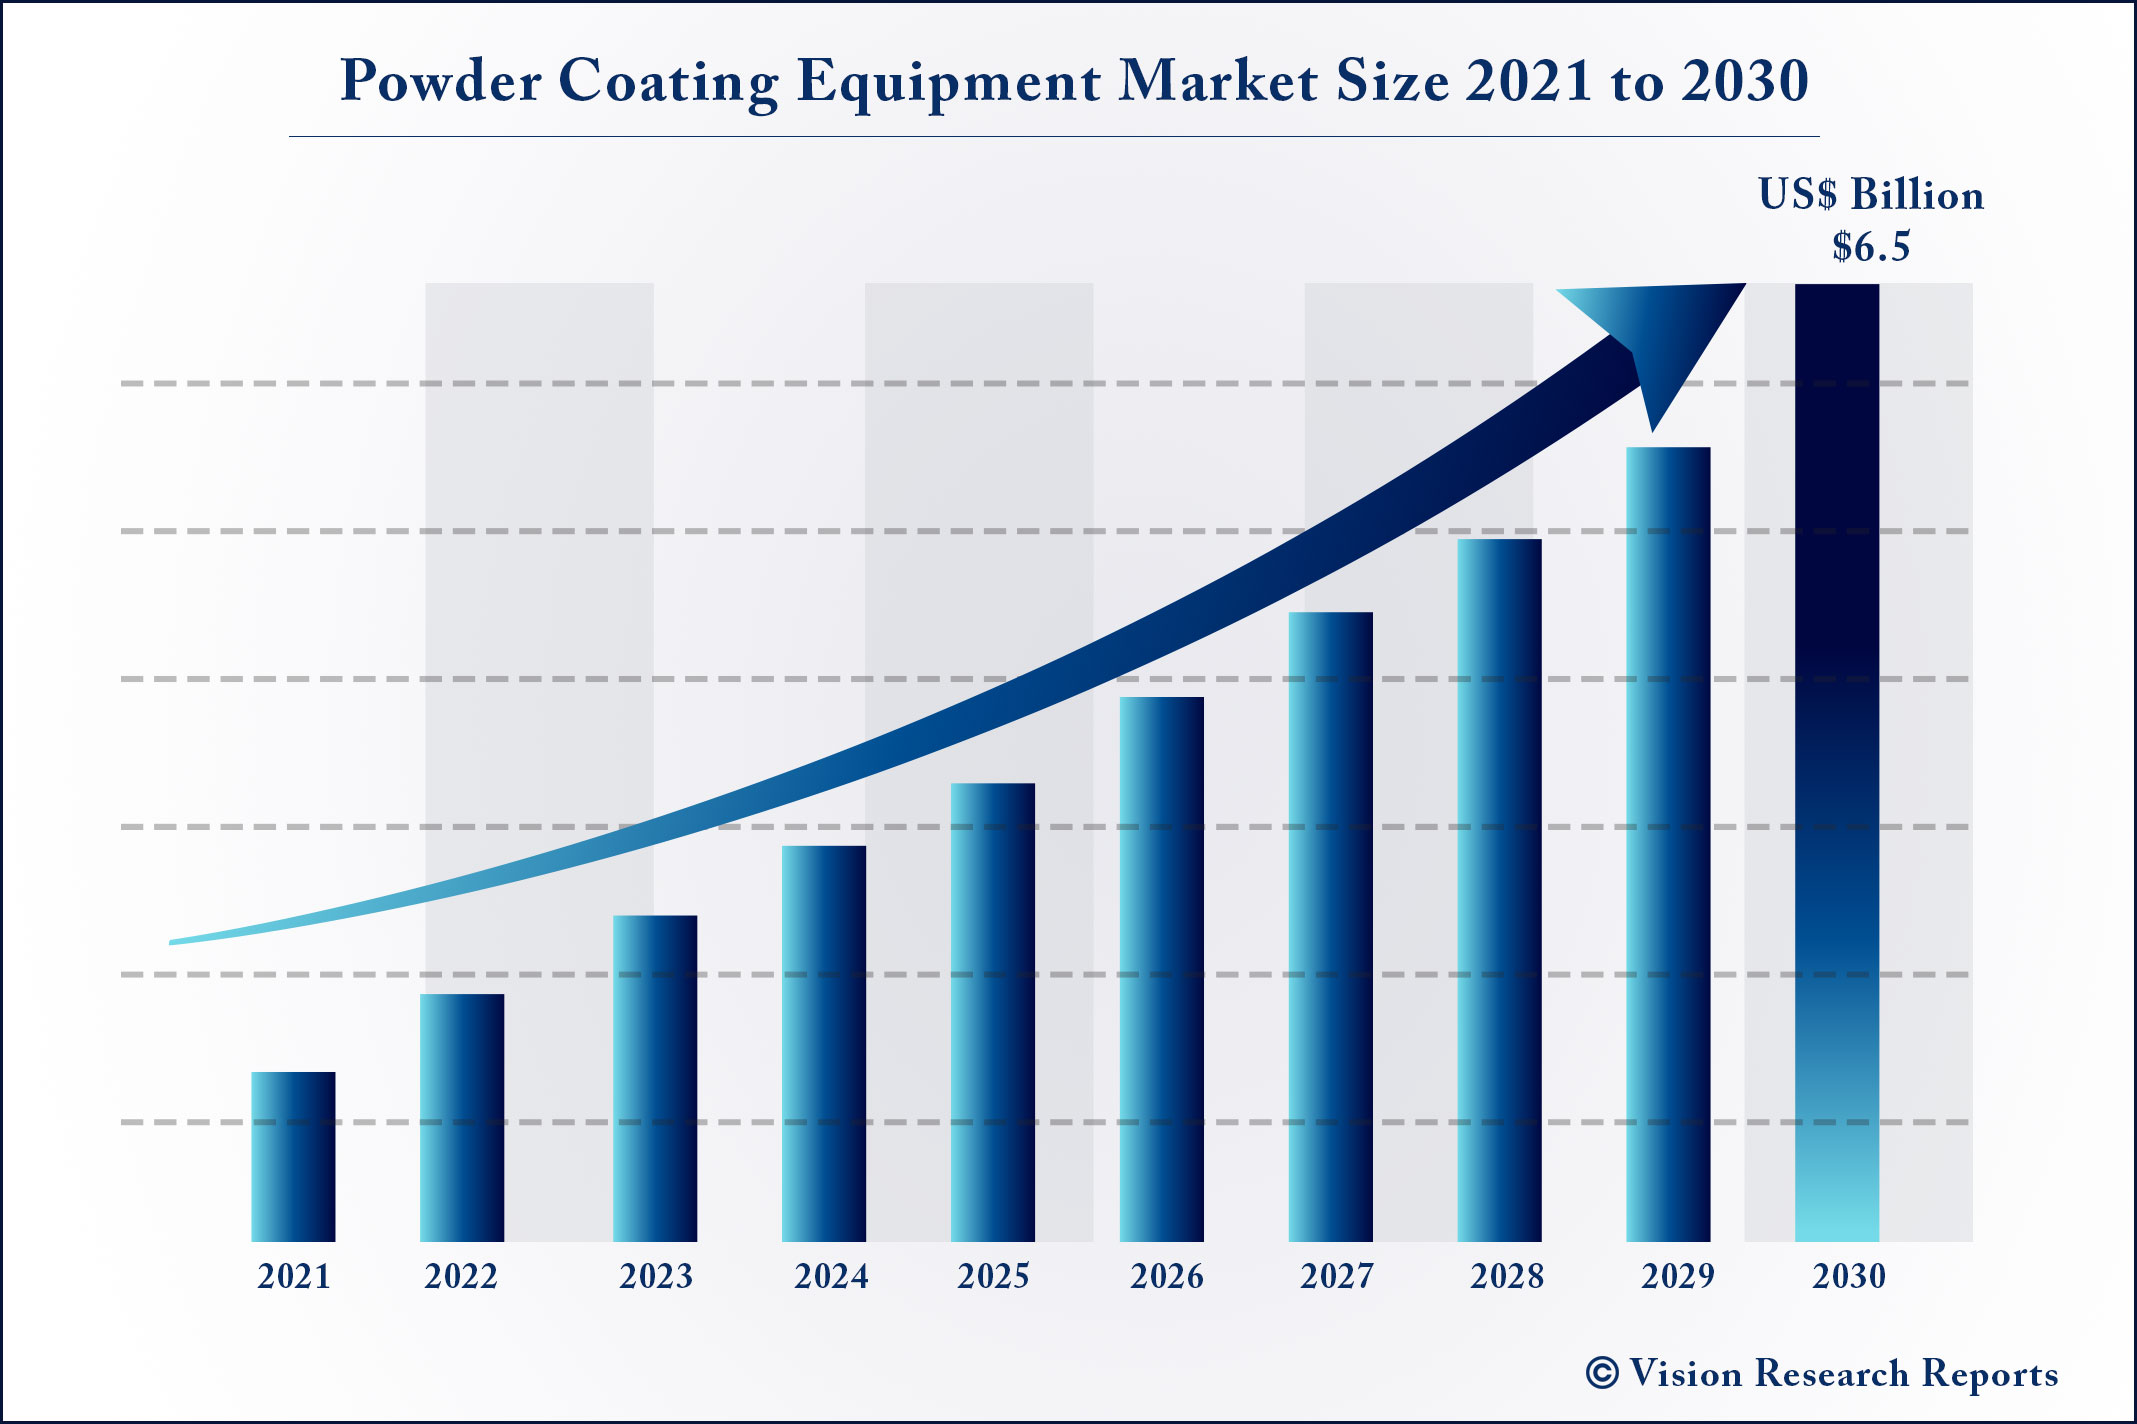 Powder Coating Equipment Market Size 2021 to 2030